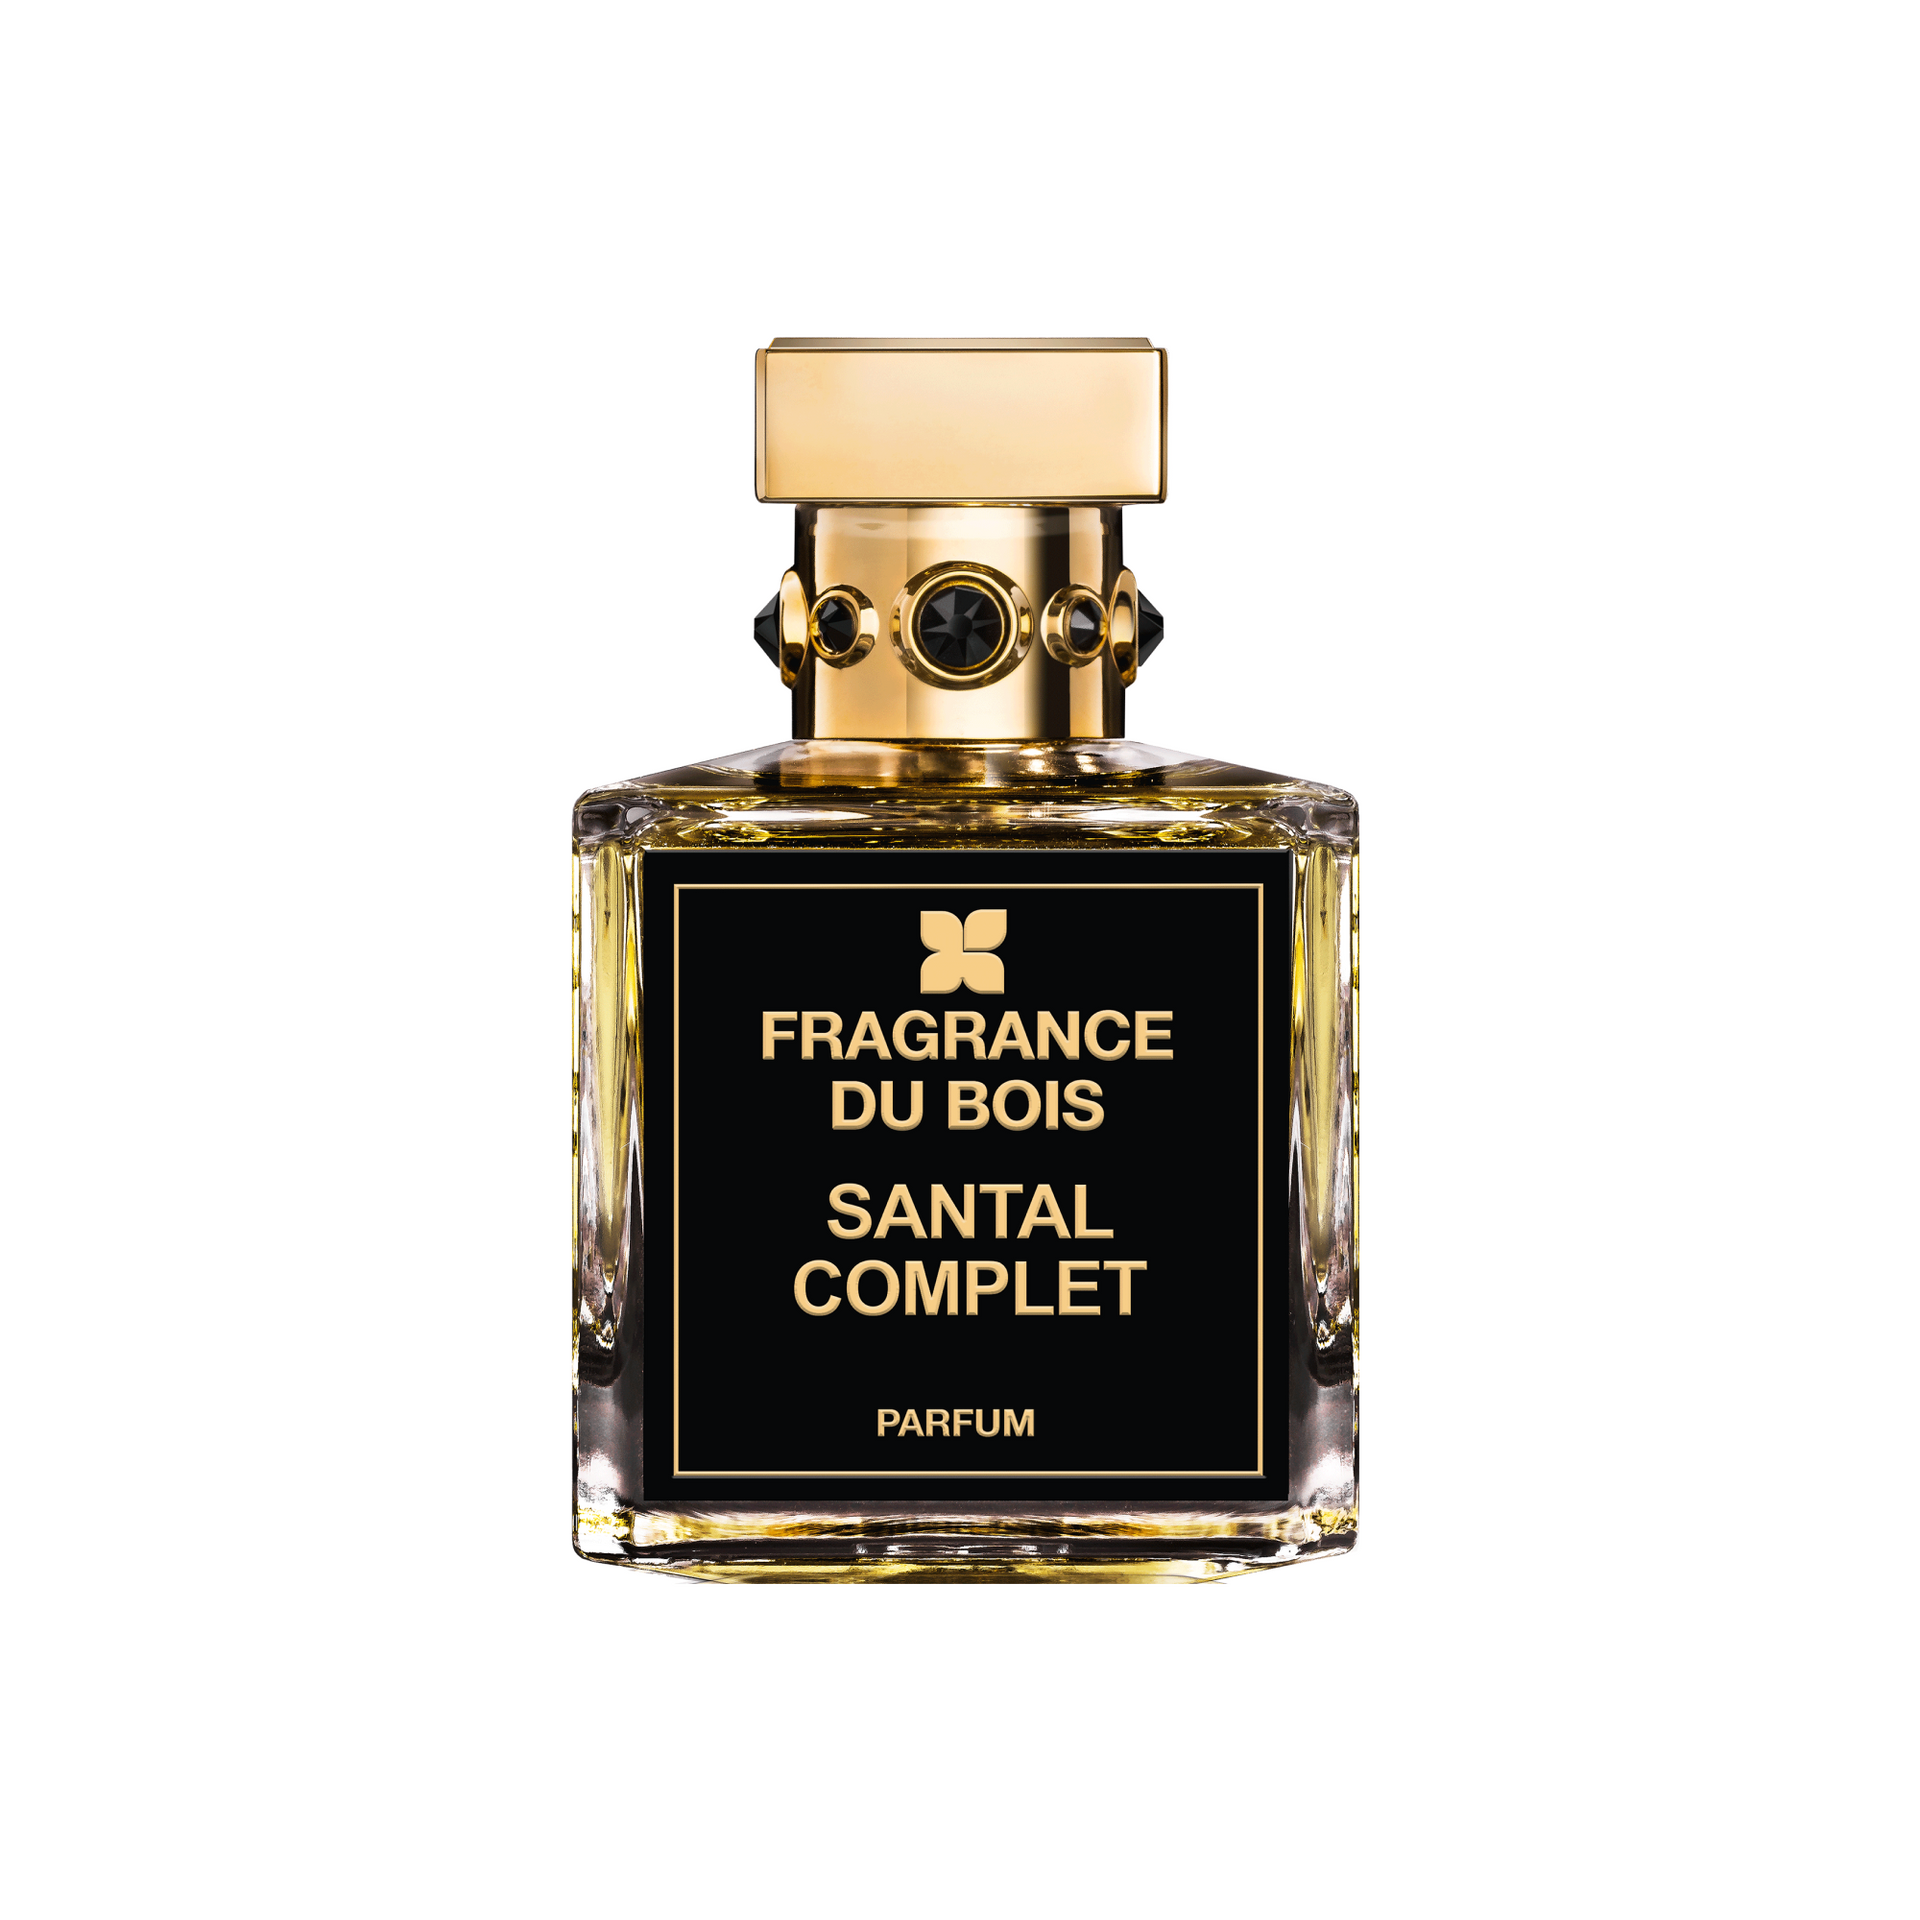 Bois de Santal Les Parfums du Soleil perfume - a fragrance for women and men